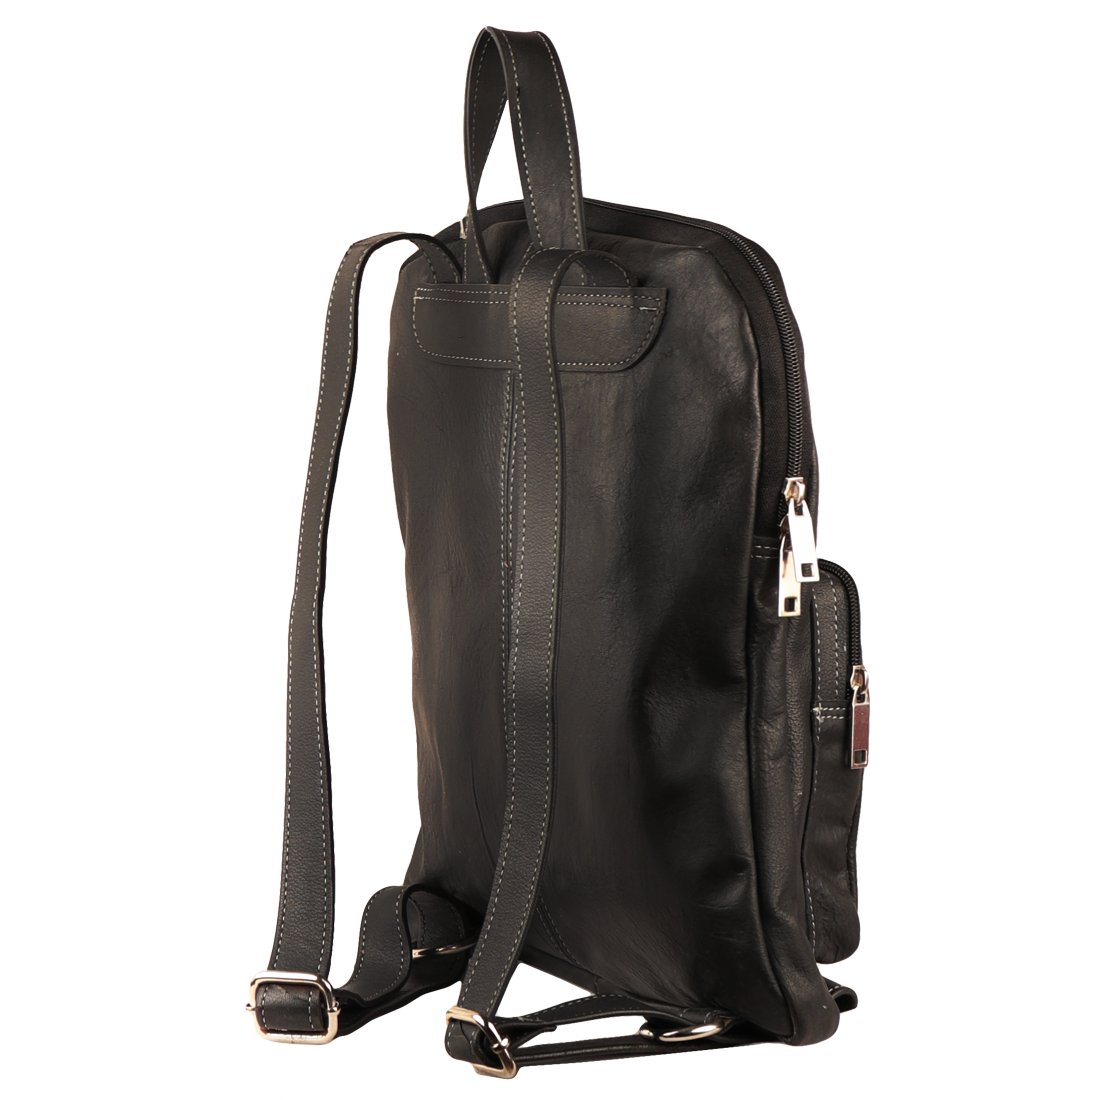 Raw Leather Mini Backpack Black